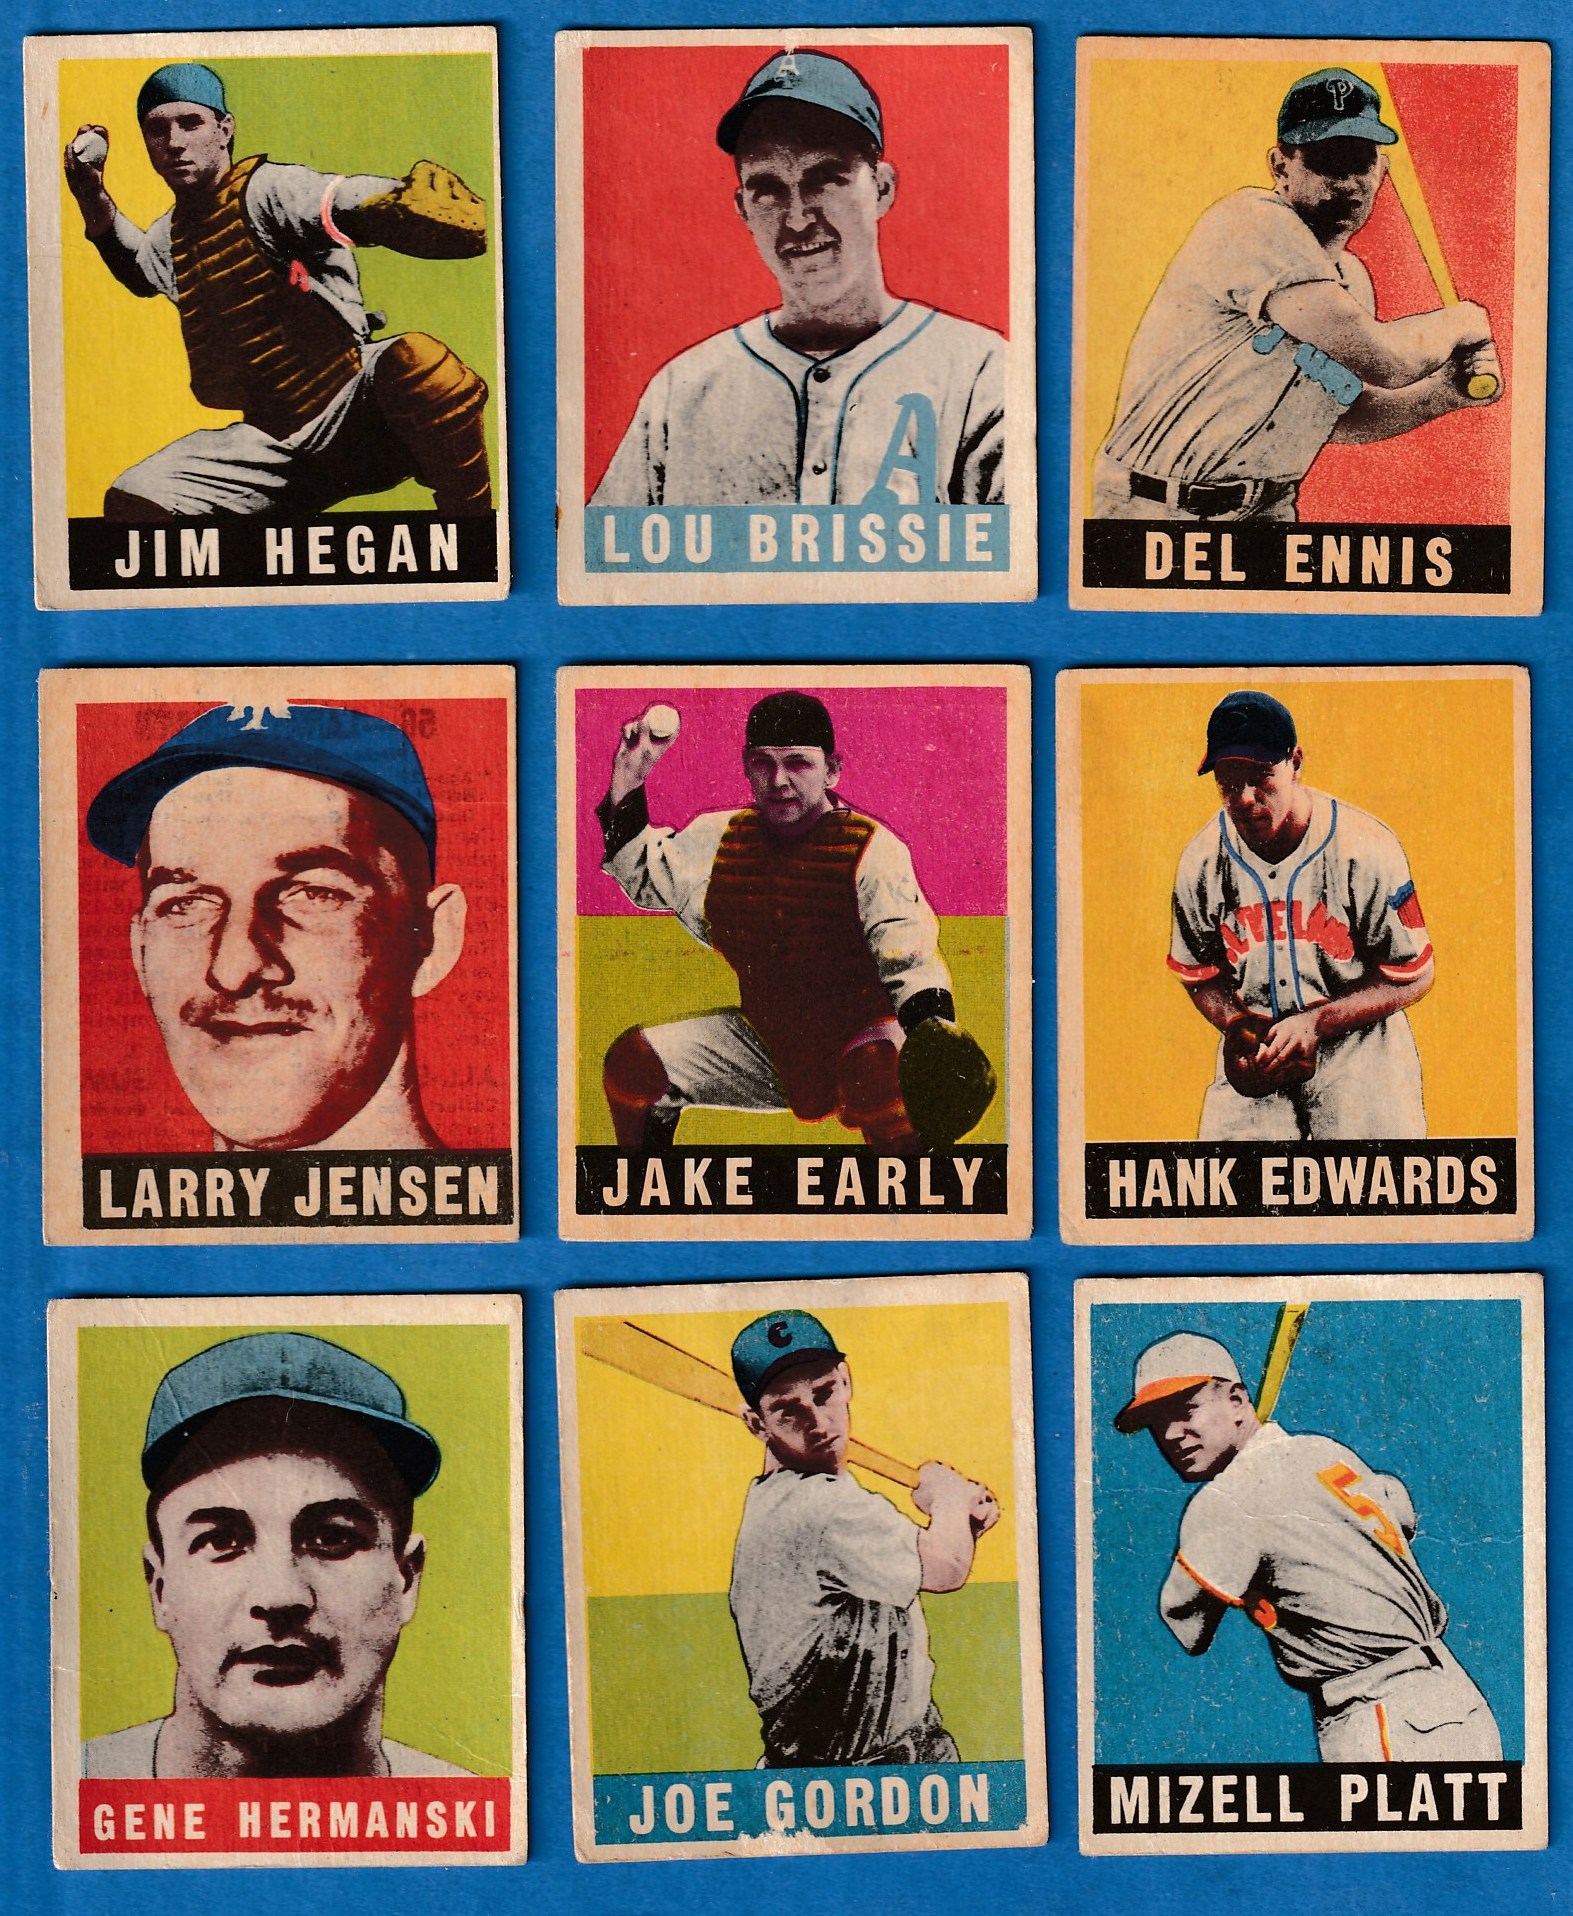 1948-49 Leaf #102 Gene Hermanski ROOKIE [VAR:Correct Hermanski] (Dodgers) Baseball cards value